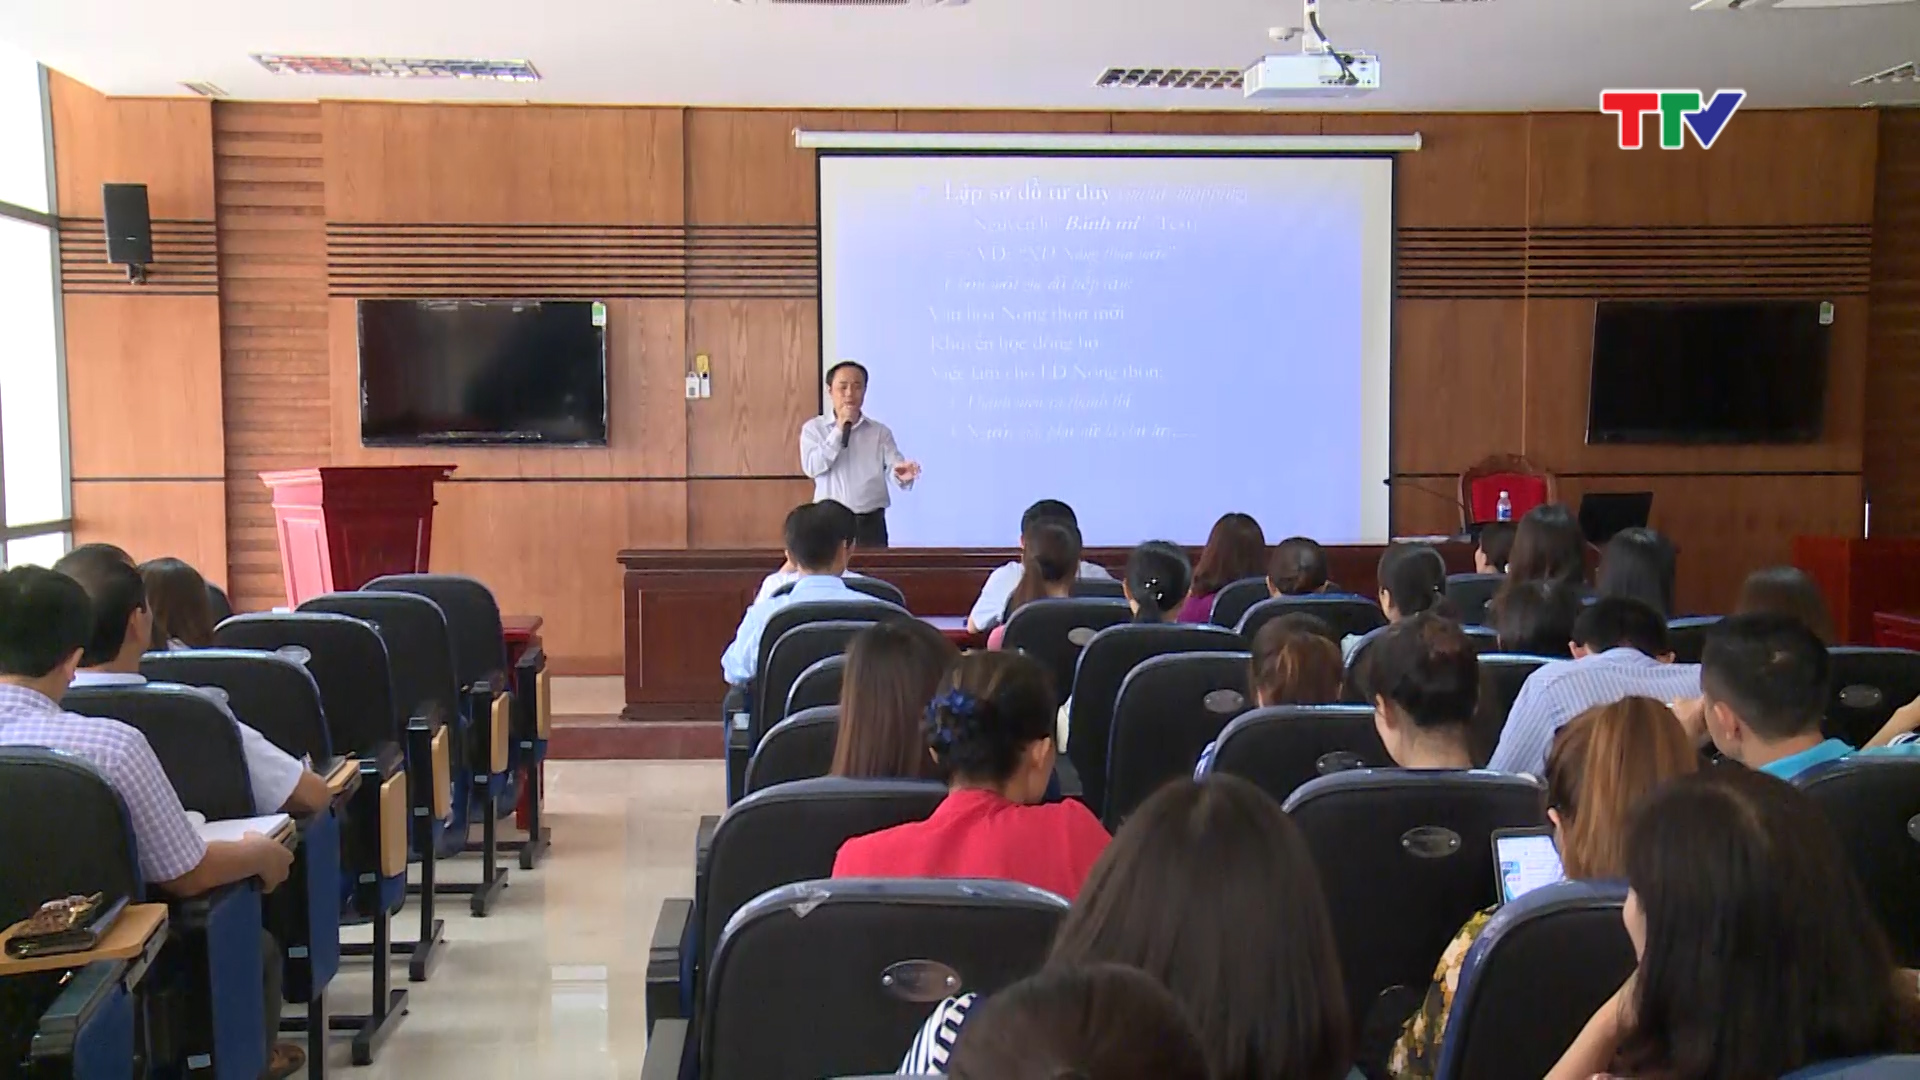  Hội nhà báo Việt Nam tỉnh Thanh Hóa tổ chức Hội nghị bồi dưỡng nghiệp vụ về kỹ năng sáng tạo tác phẩm báo chí chất lượng cao cho hội viên.